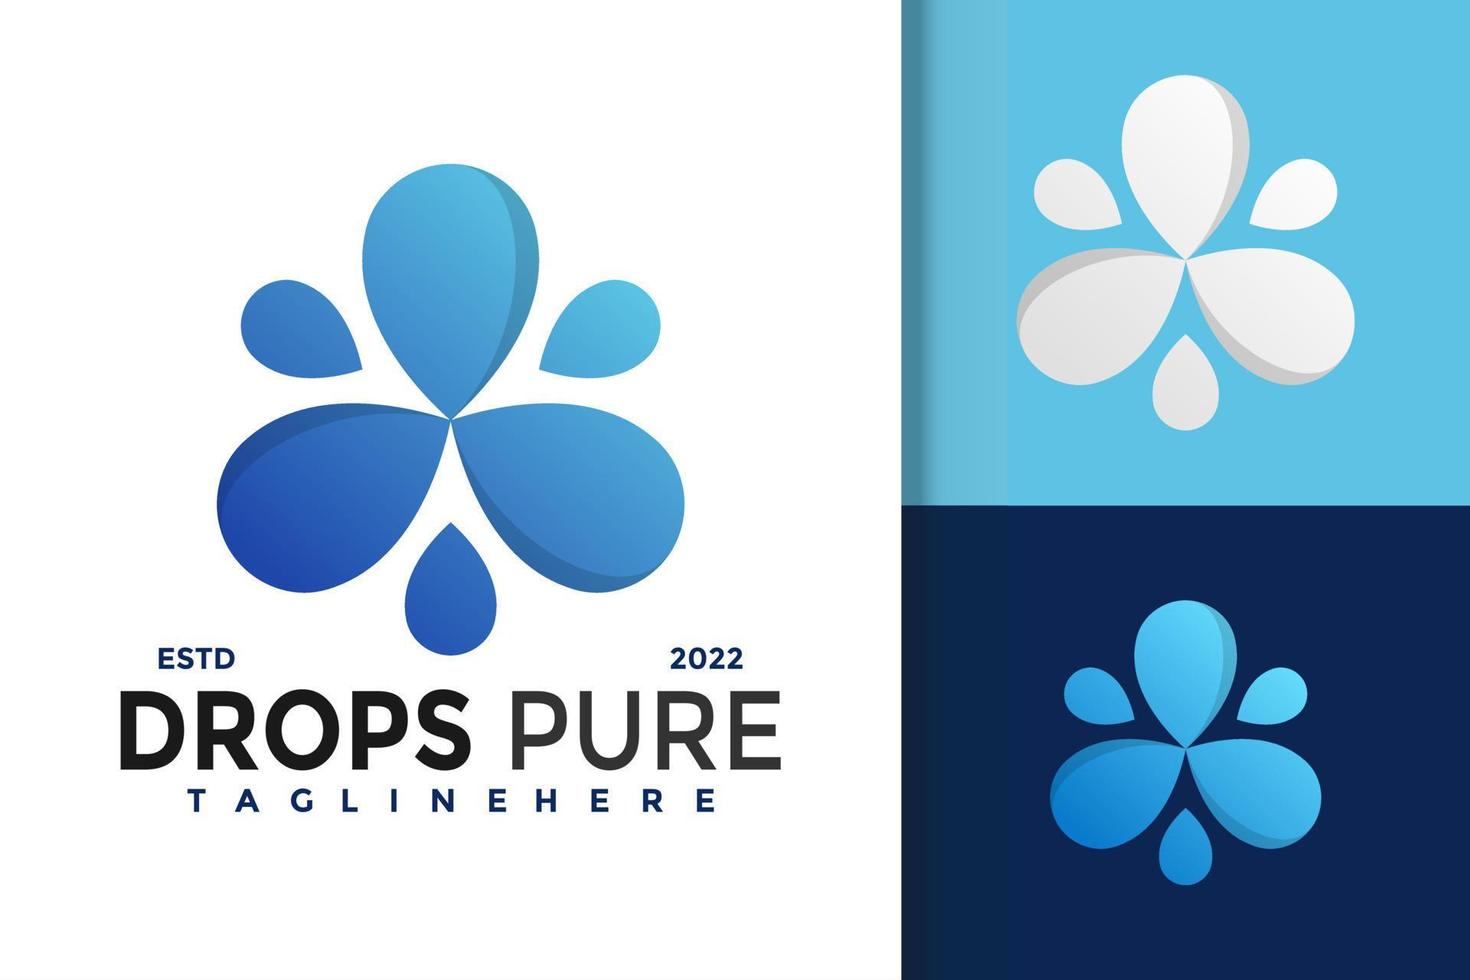 création de logo pure splash drop, vecteur de logos d'identité de marque, logo moderne, modèle d'illustration vectorielle de conceptions de logo